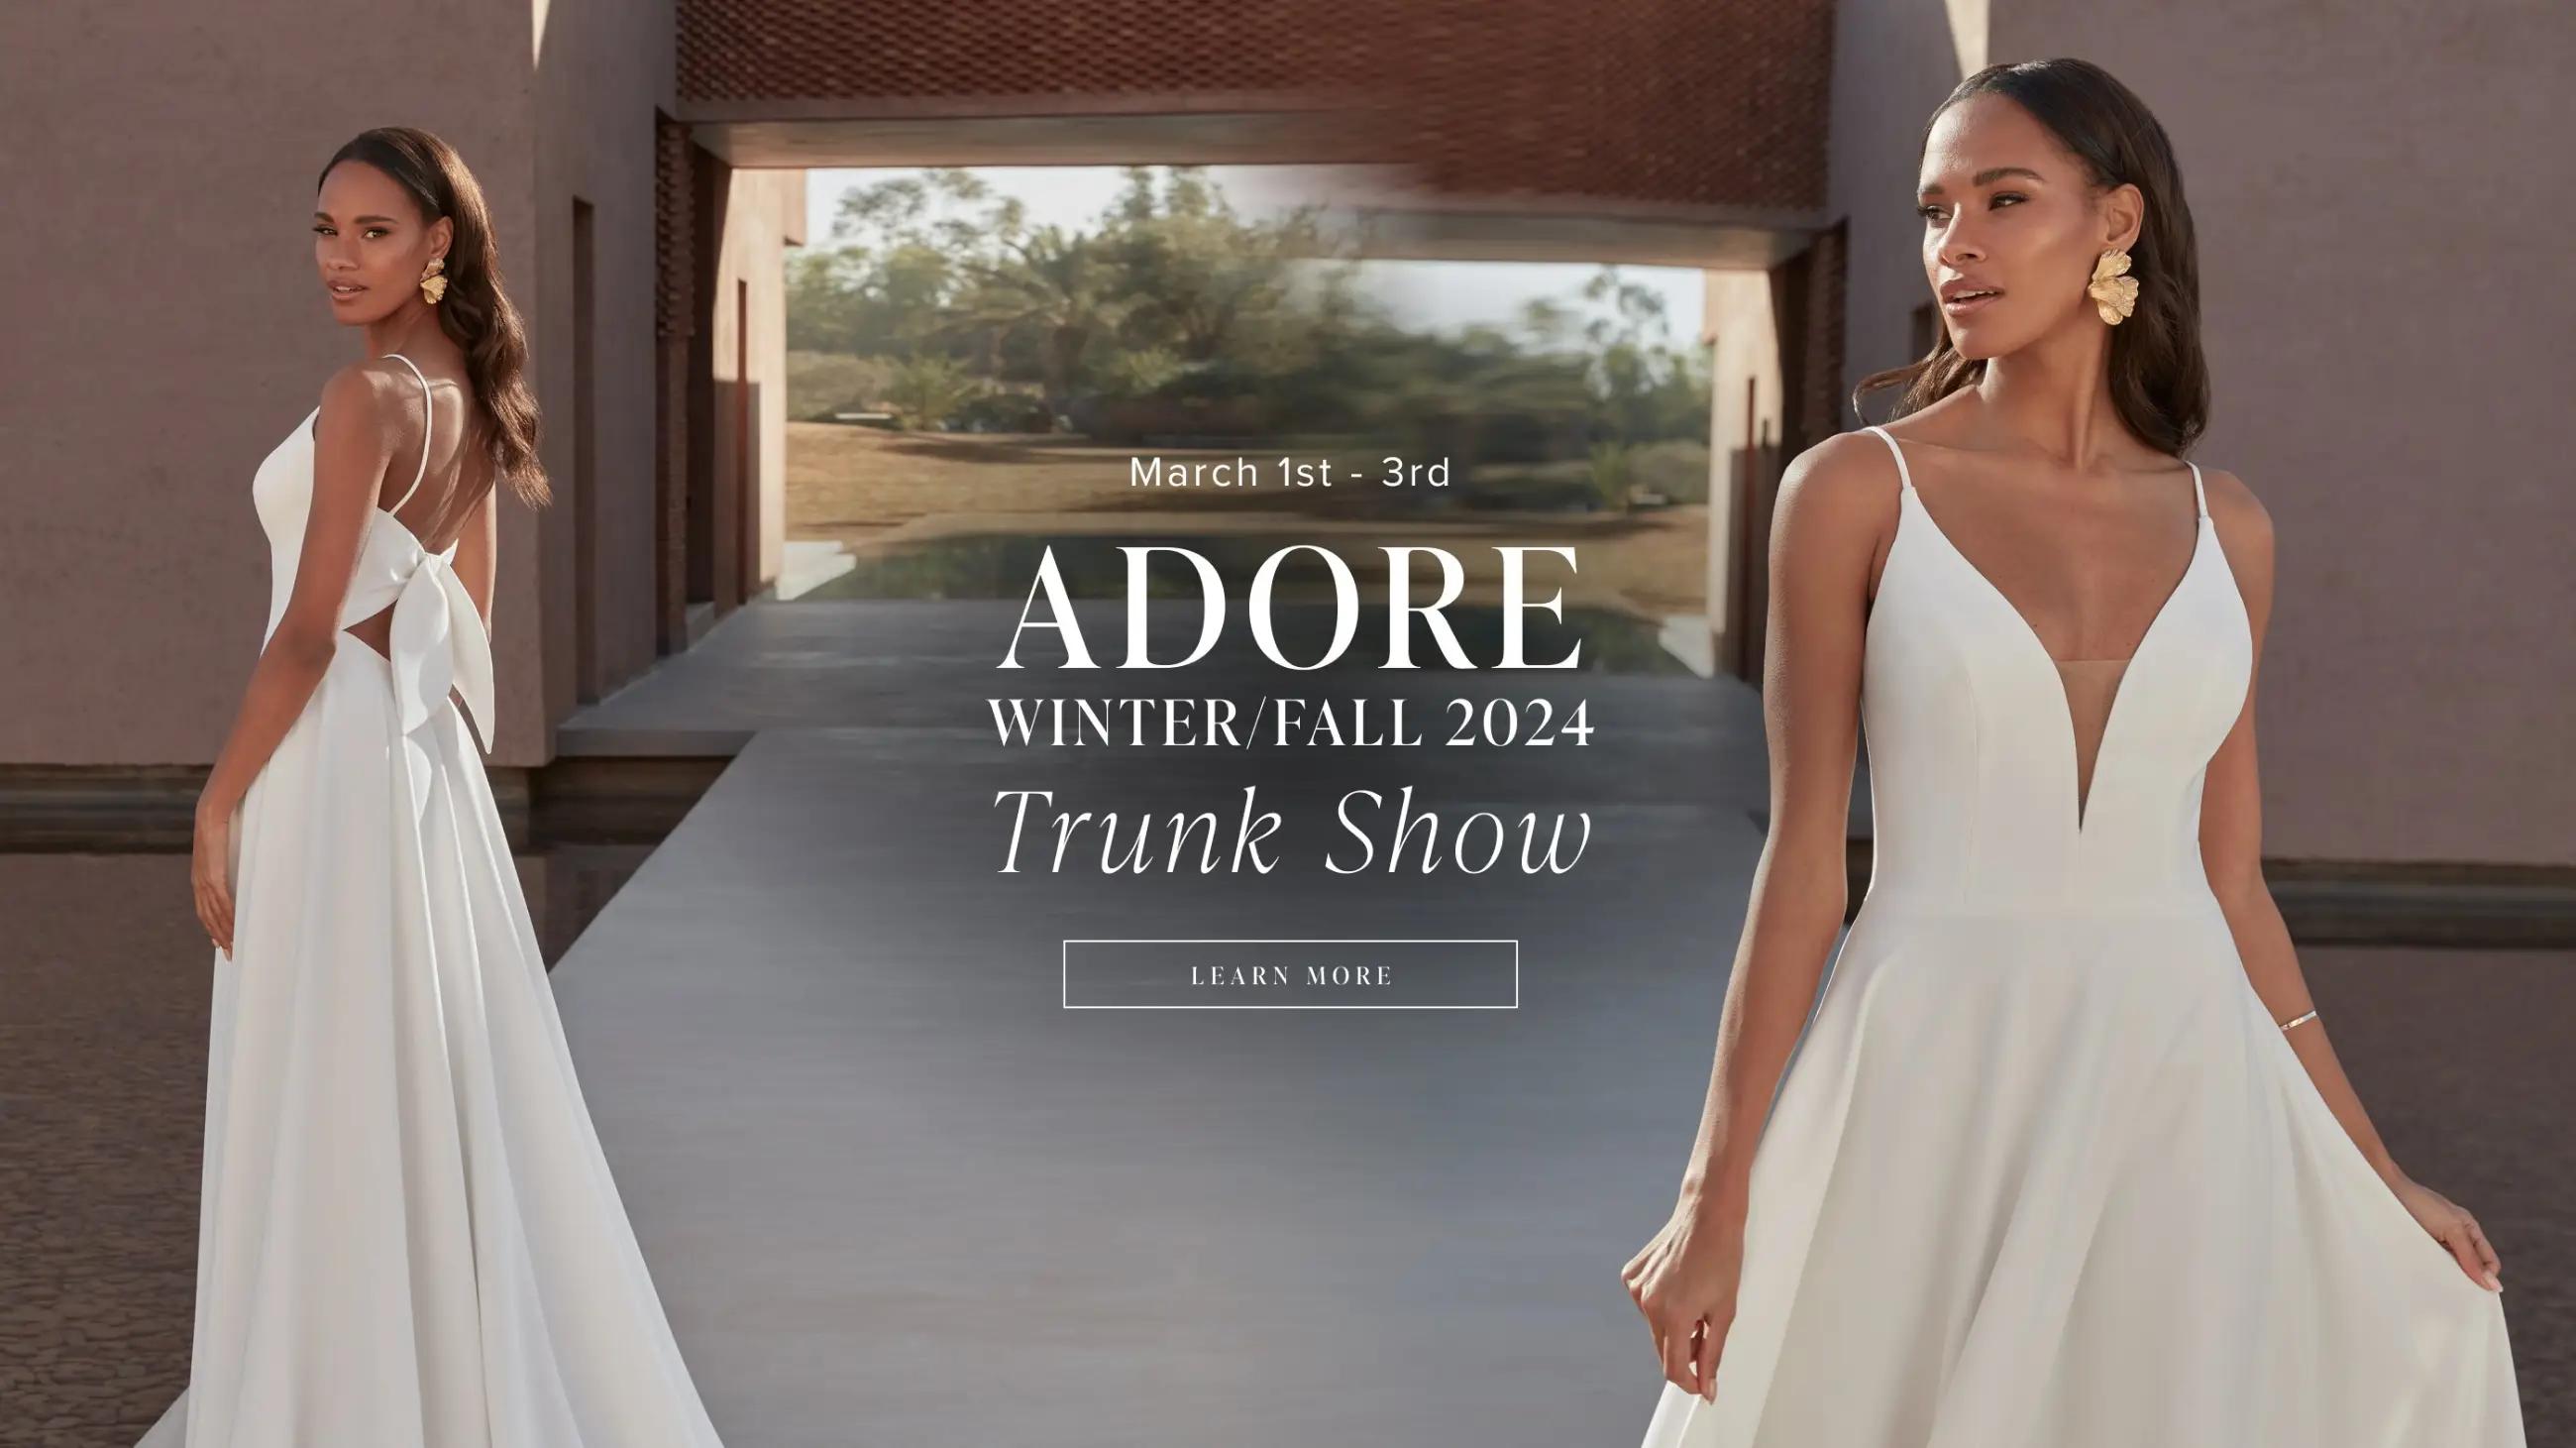 Adore winter/fall trunk show 2024 banner for desktop